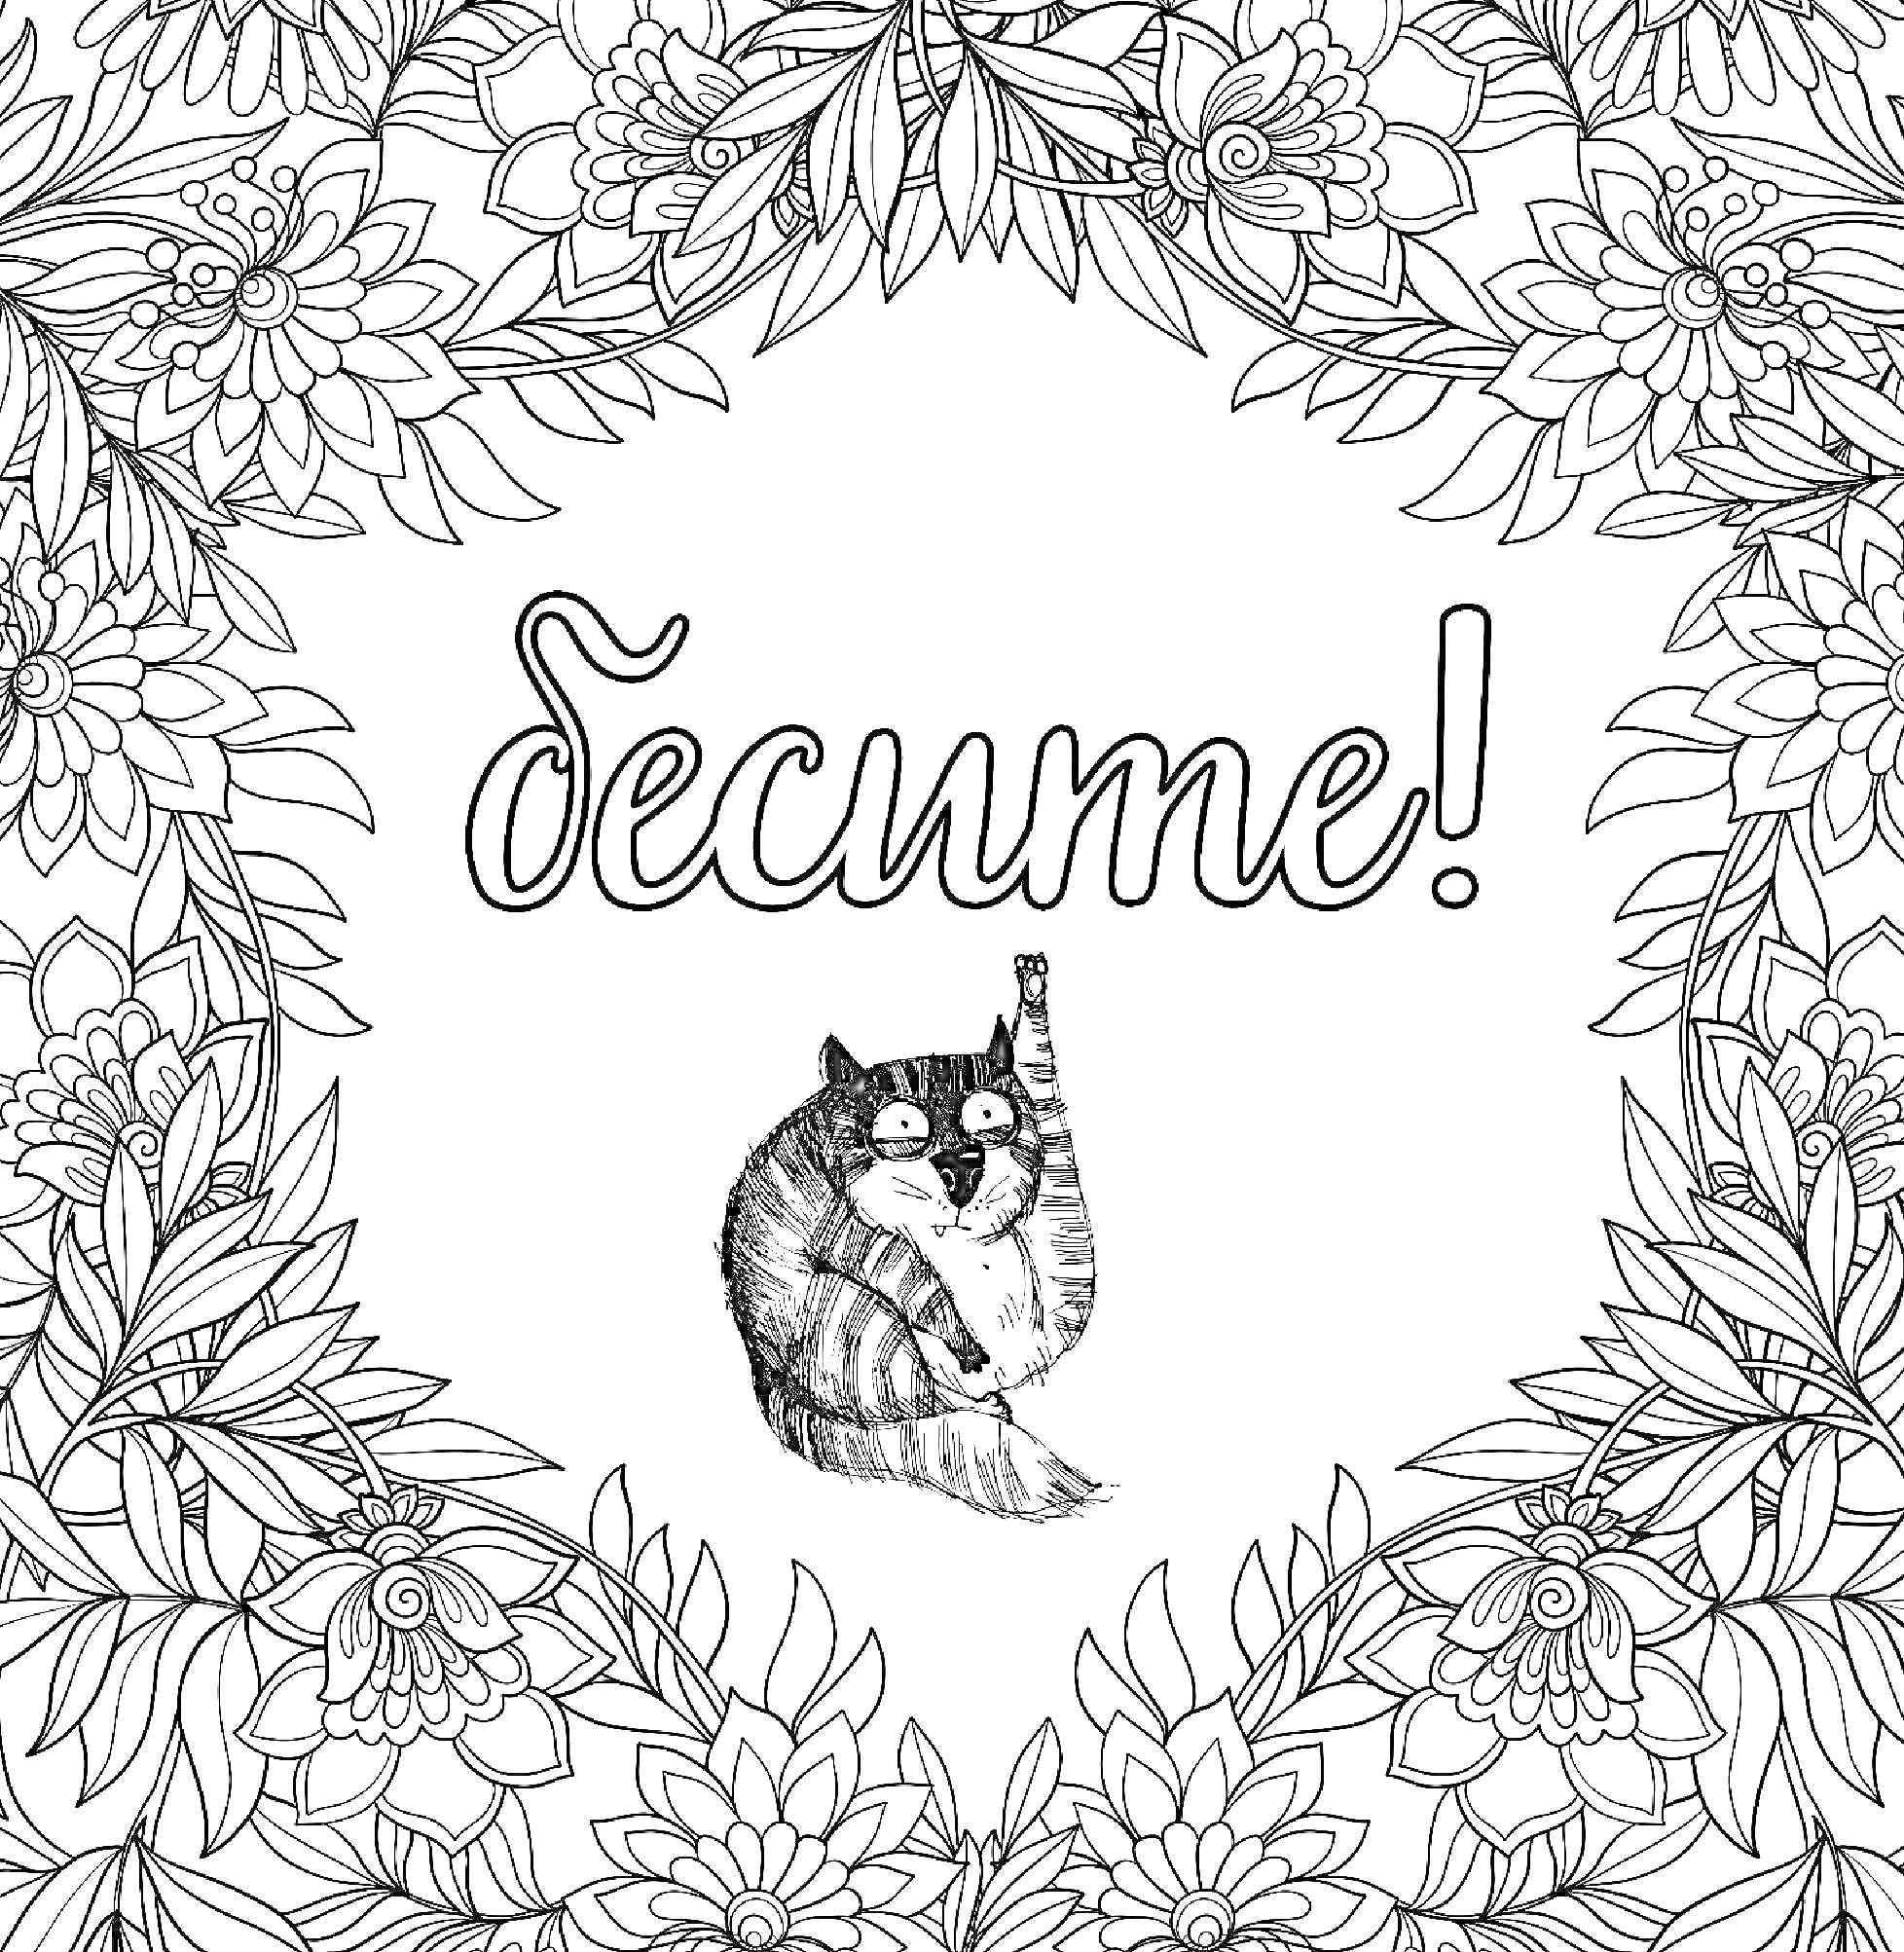 Раскраска Бесите, рамка из цветов, кот с поднятой лапой